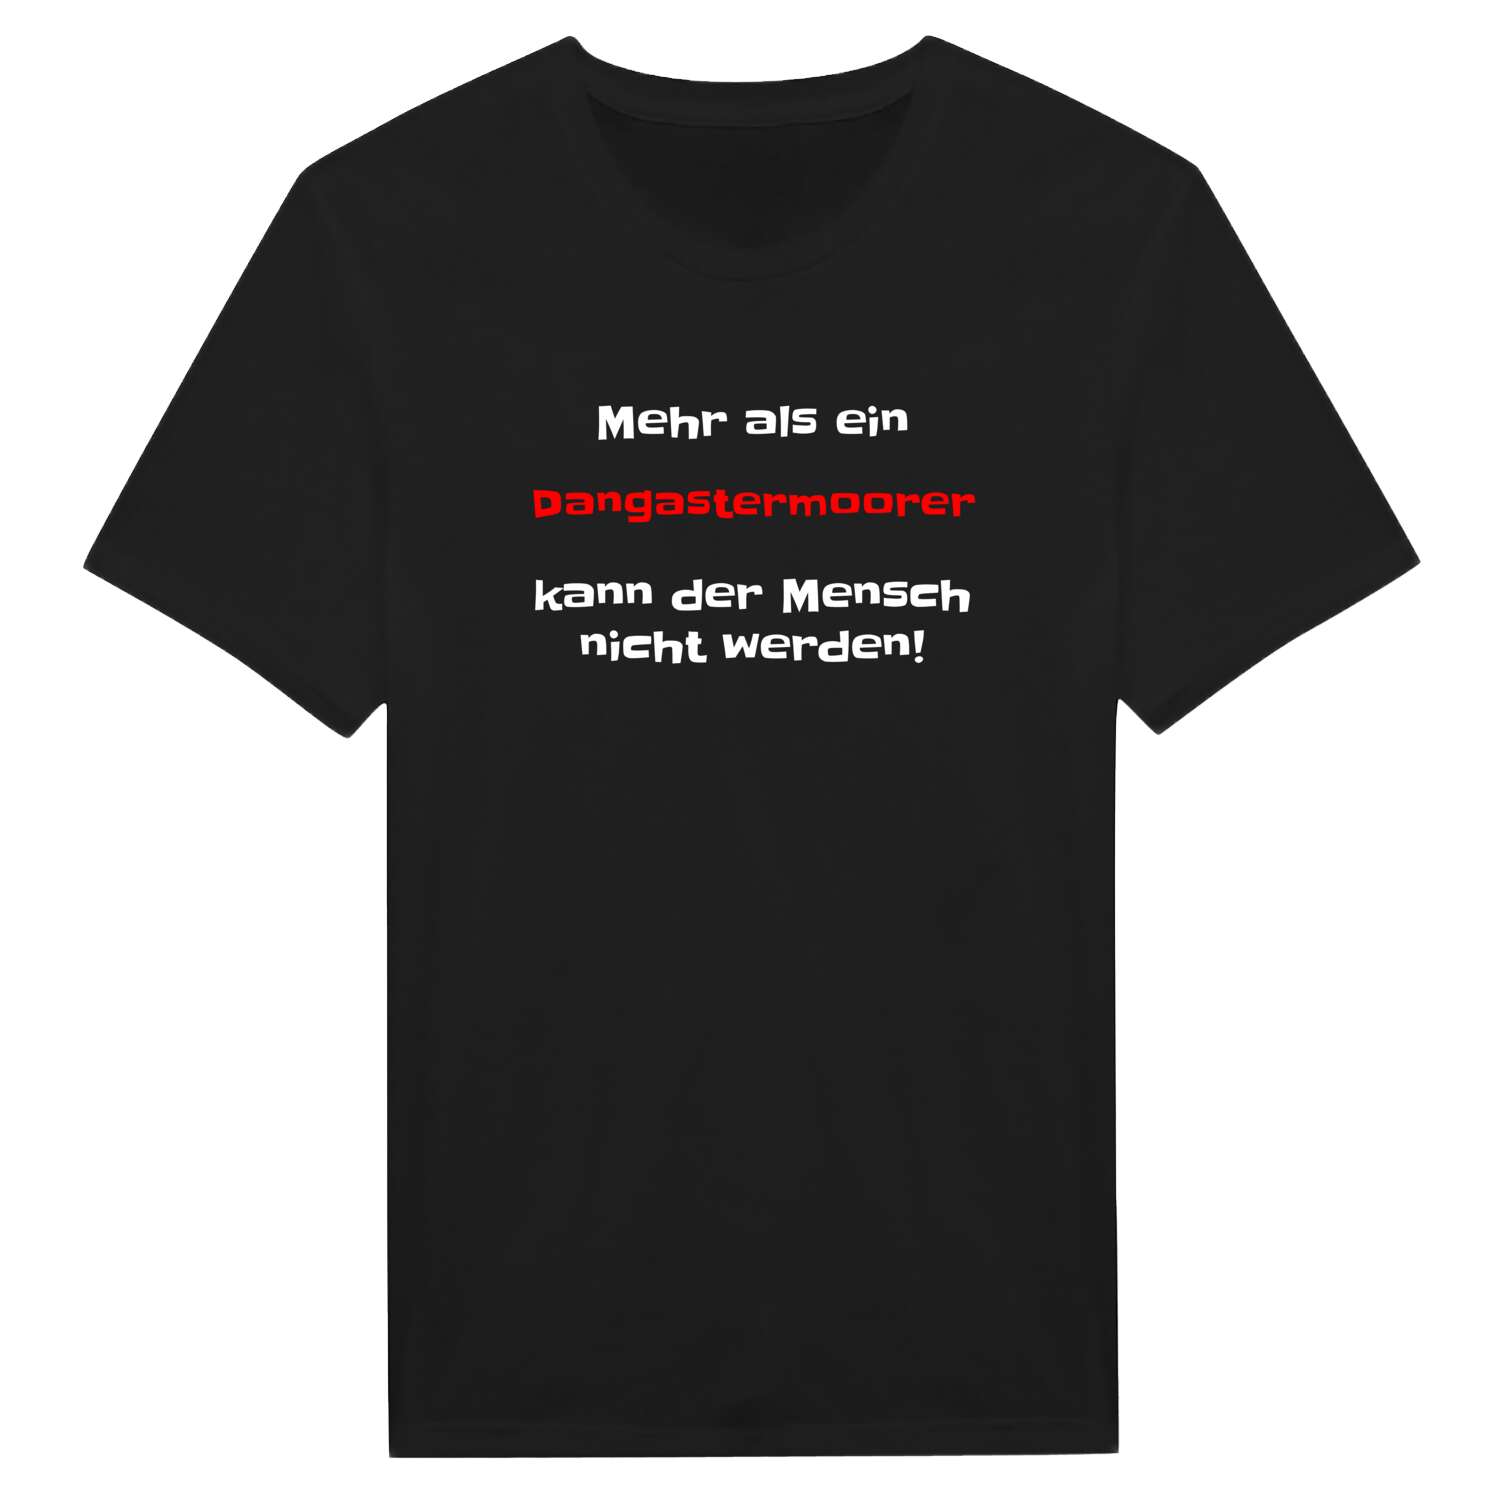 Dangastermoor T-Shirt »Mehr als ein«